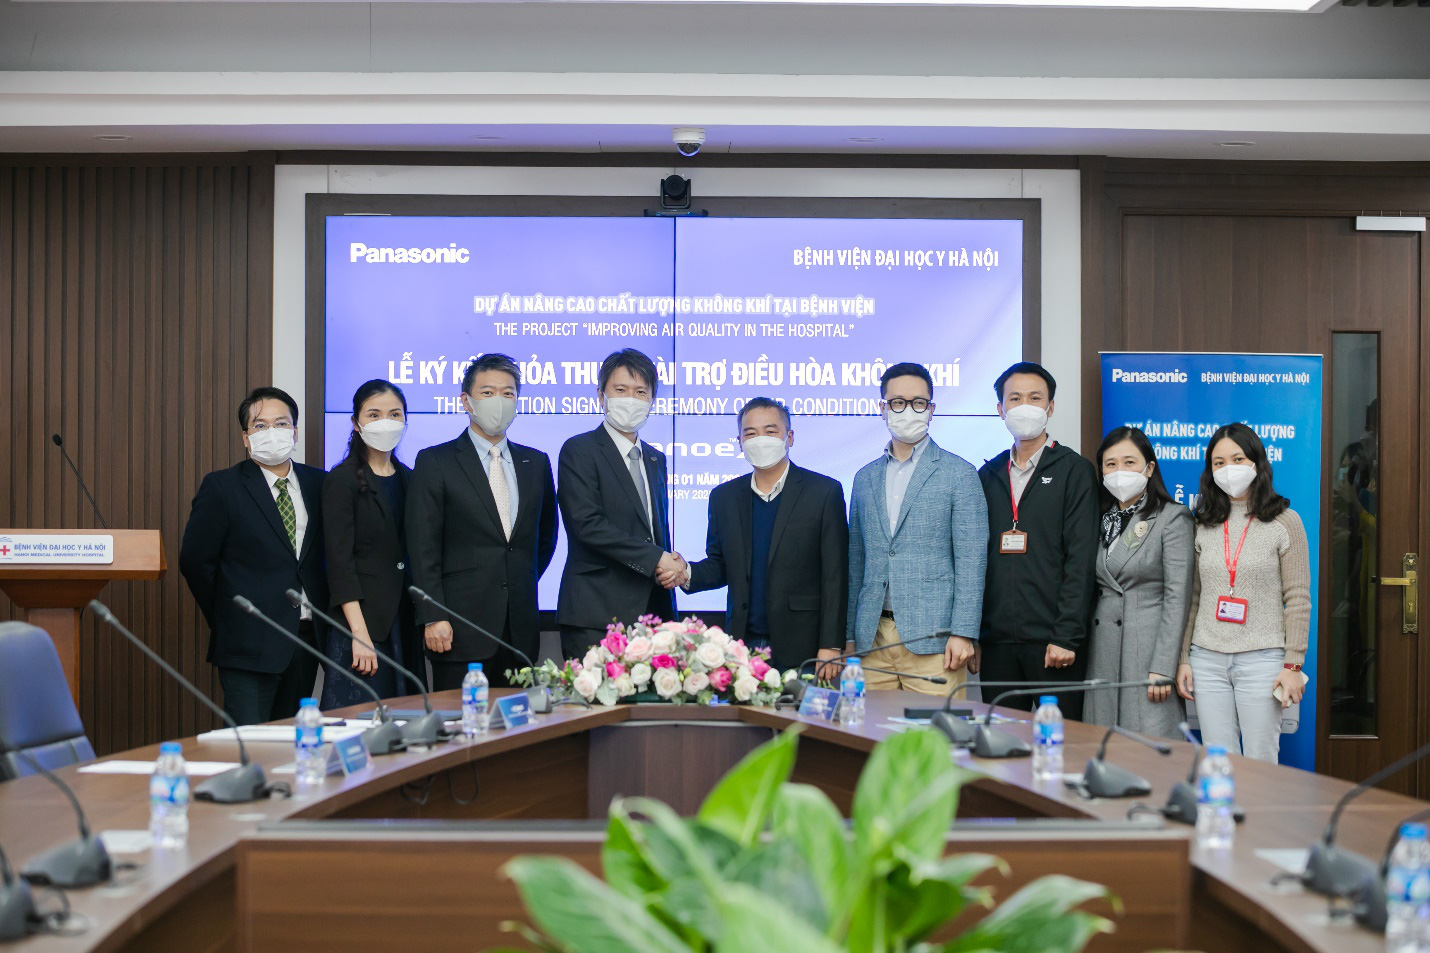 Panasonic khởi động dự án “Nâng cao chất lượng không khí tại bệnh viện” trao tặng điều hòa tích hợp công nghệ lọc khí nanoeTM X - Ảnh 3.